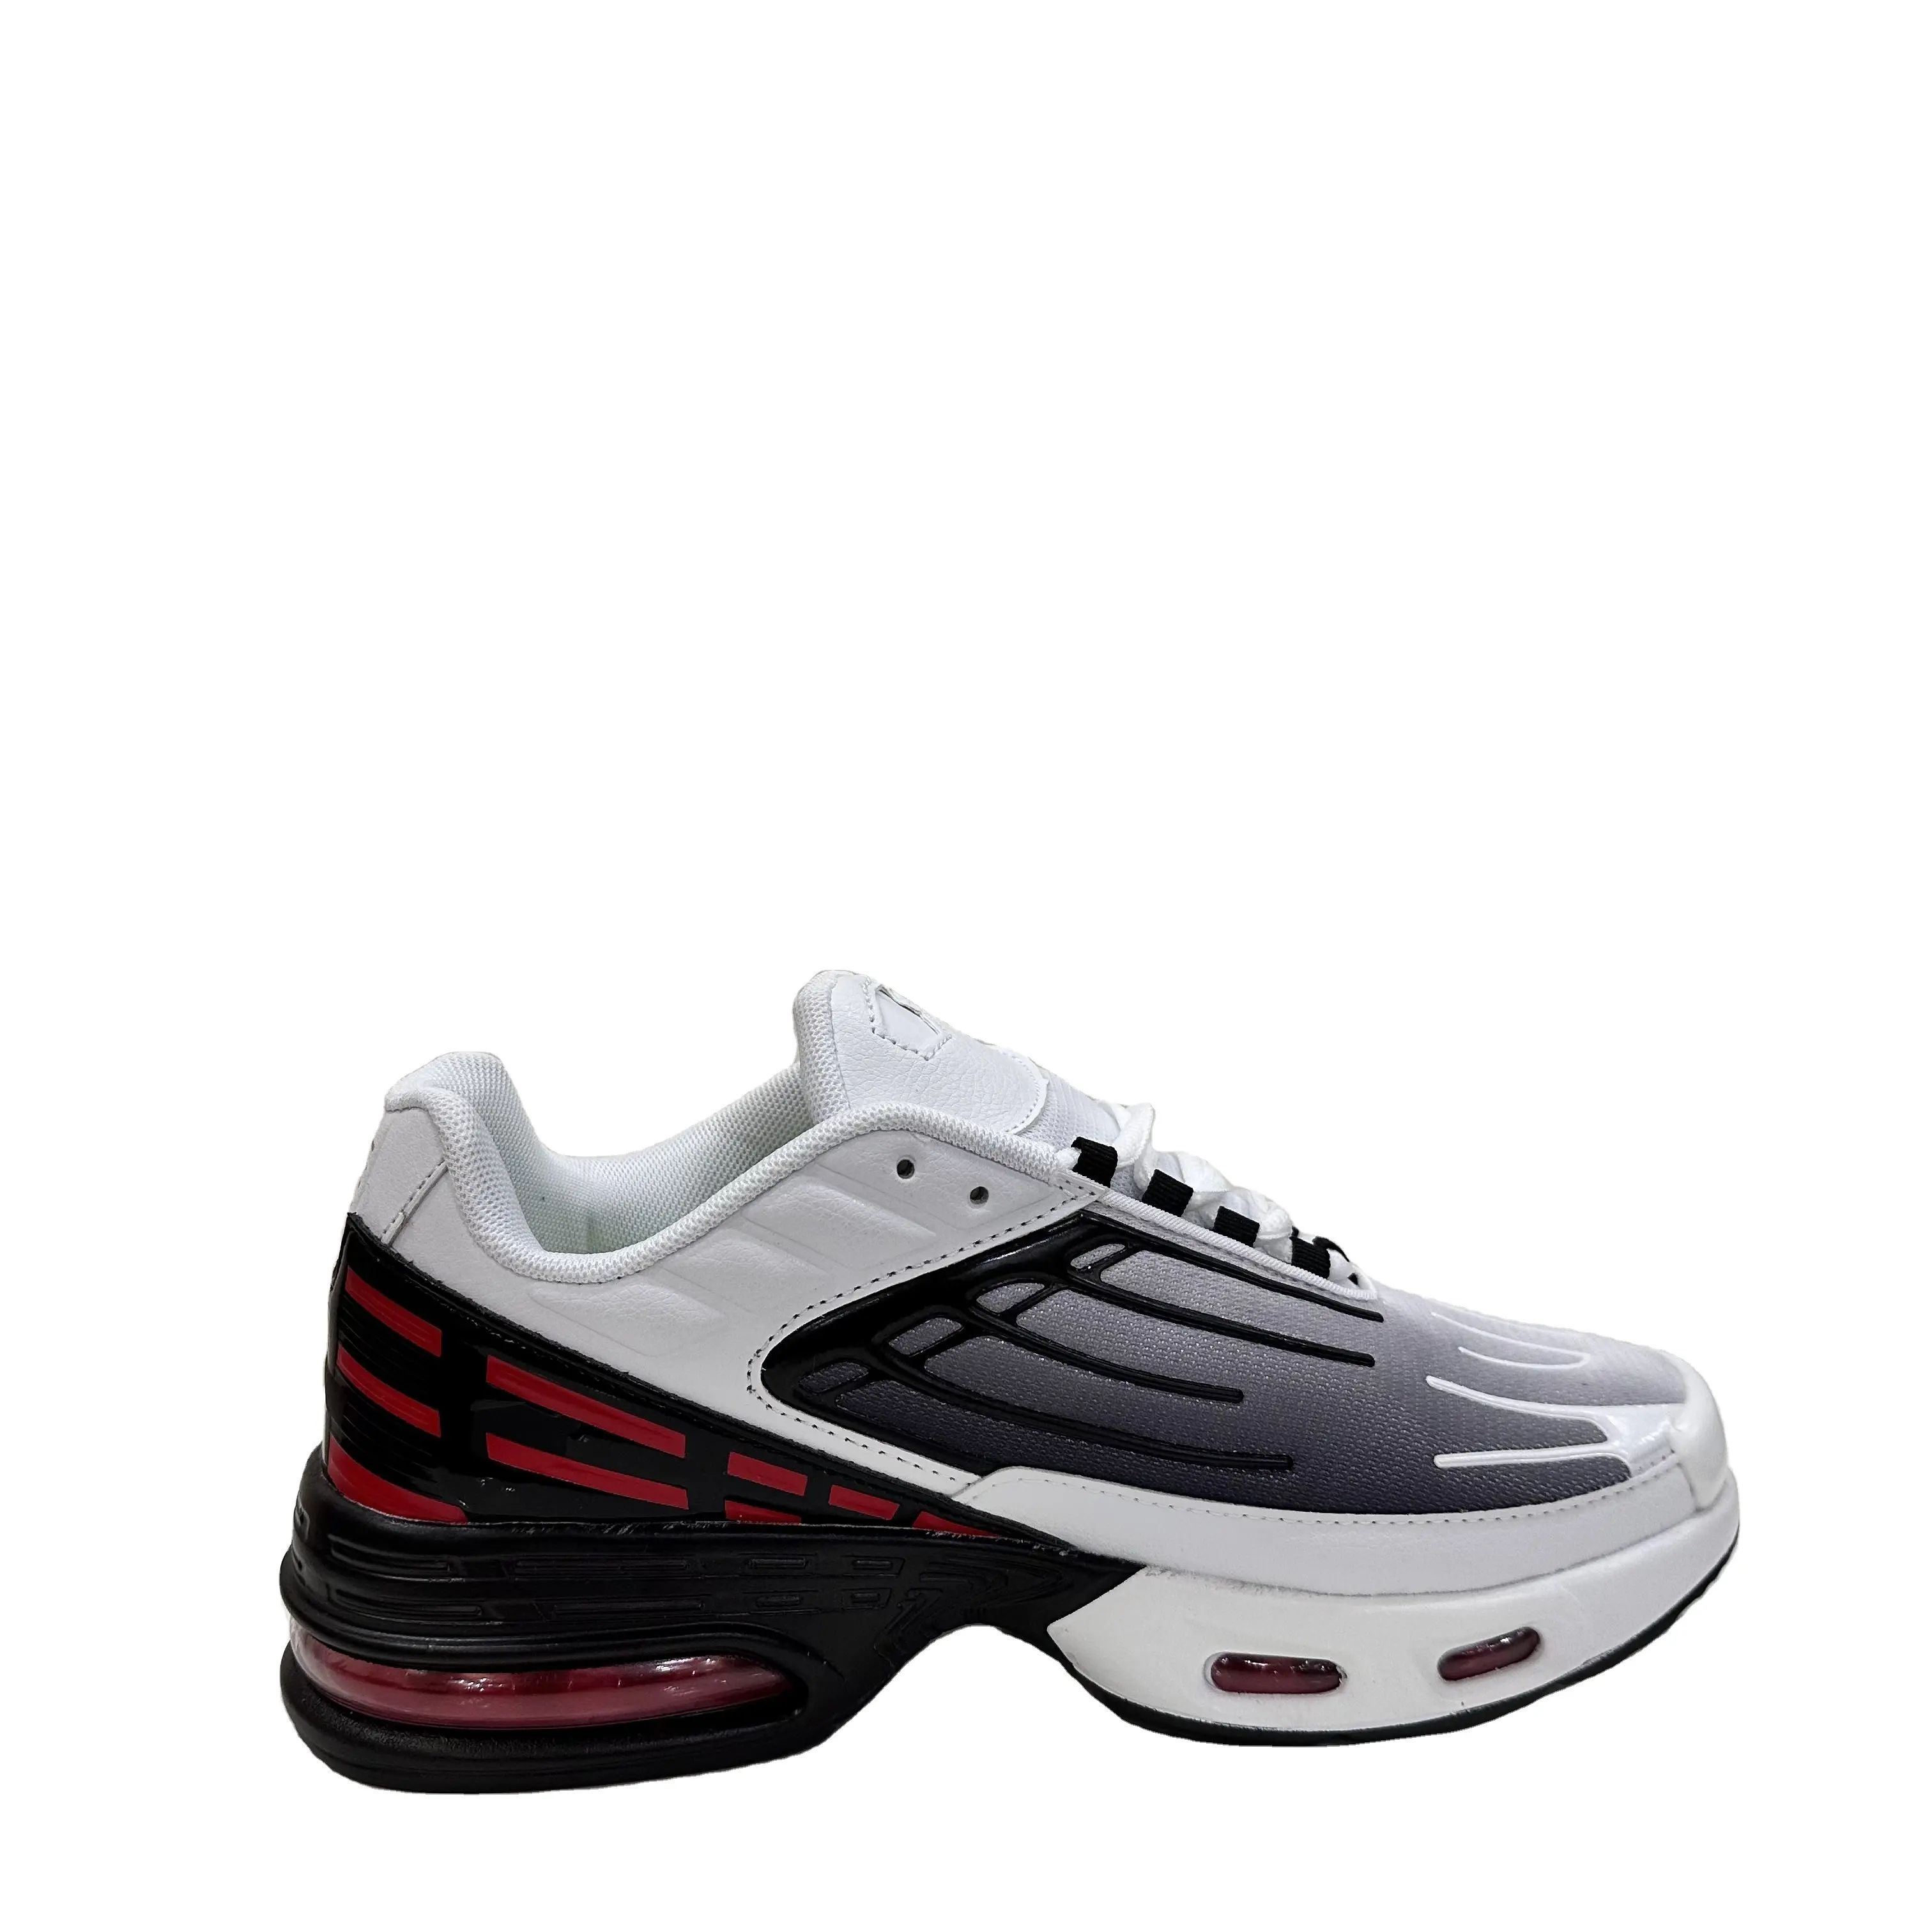 Moda rahat erkek ve kadın sneakers koşu ayakkabıları rahat ayakkabılar tam eldiven hava yastığı TN ayakkabı 1909FH001 beyaz gri kırmızı